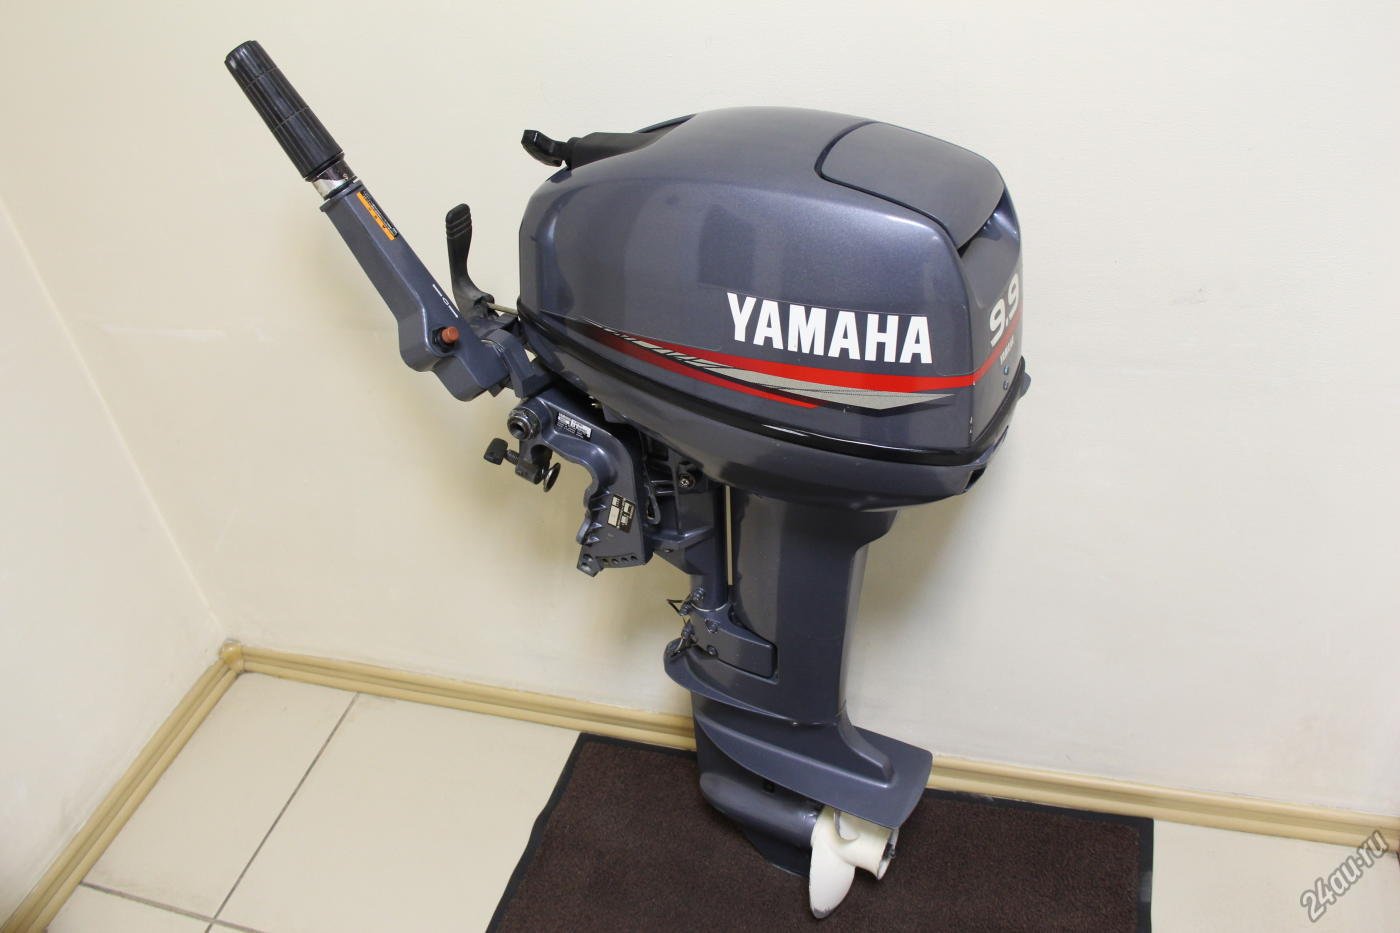 Ямаха 2 купить бу. Ямаха 9.9 2т. Мотор Ямаха 9.9. Лодочный мотор Ямаха (Yamaha) 9.9. Yamaha 9.9 2-х тактный.